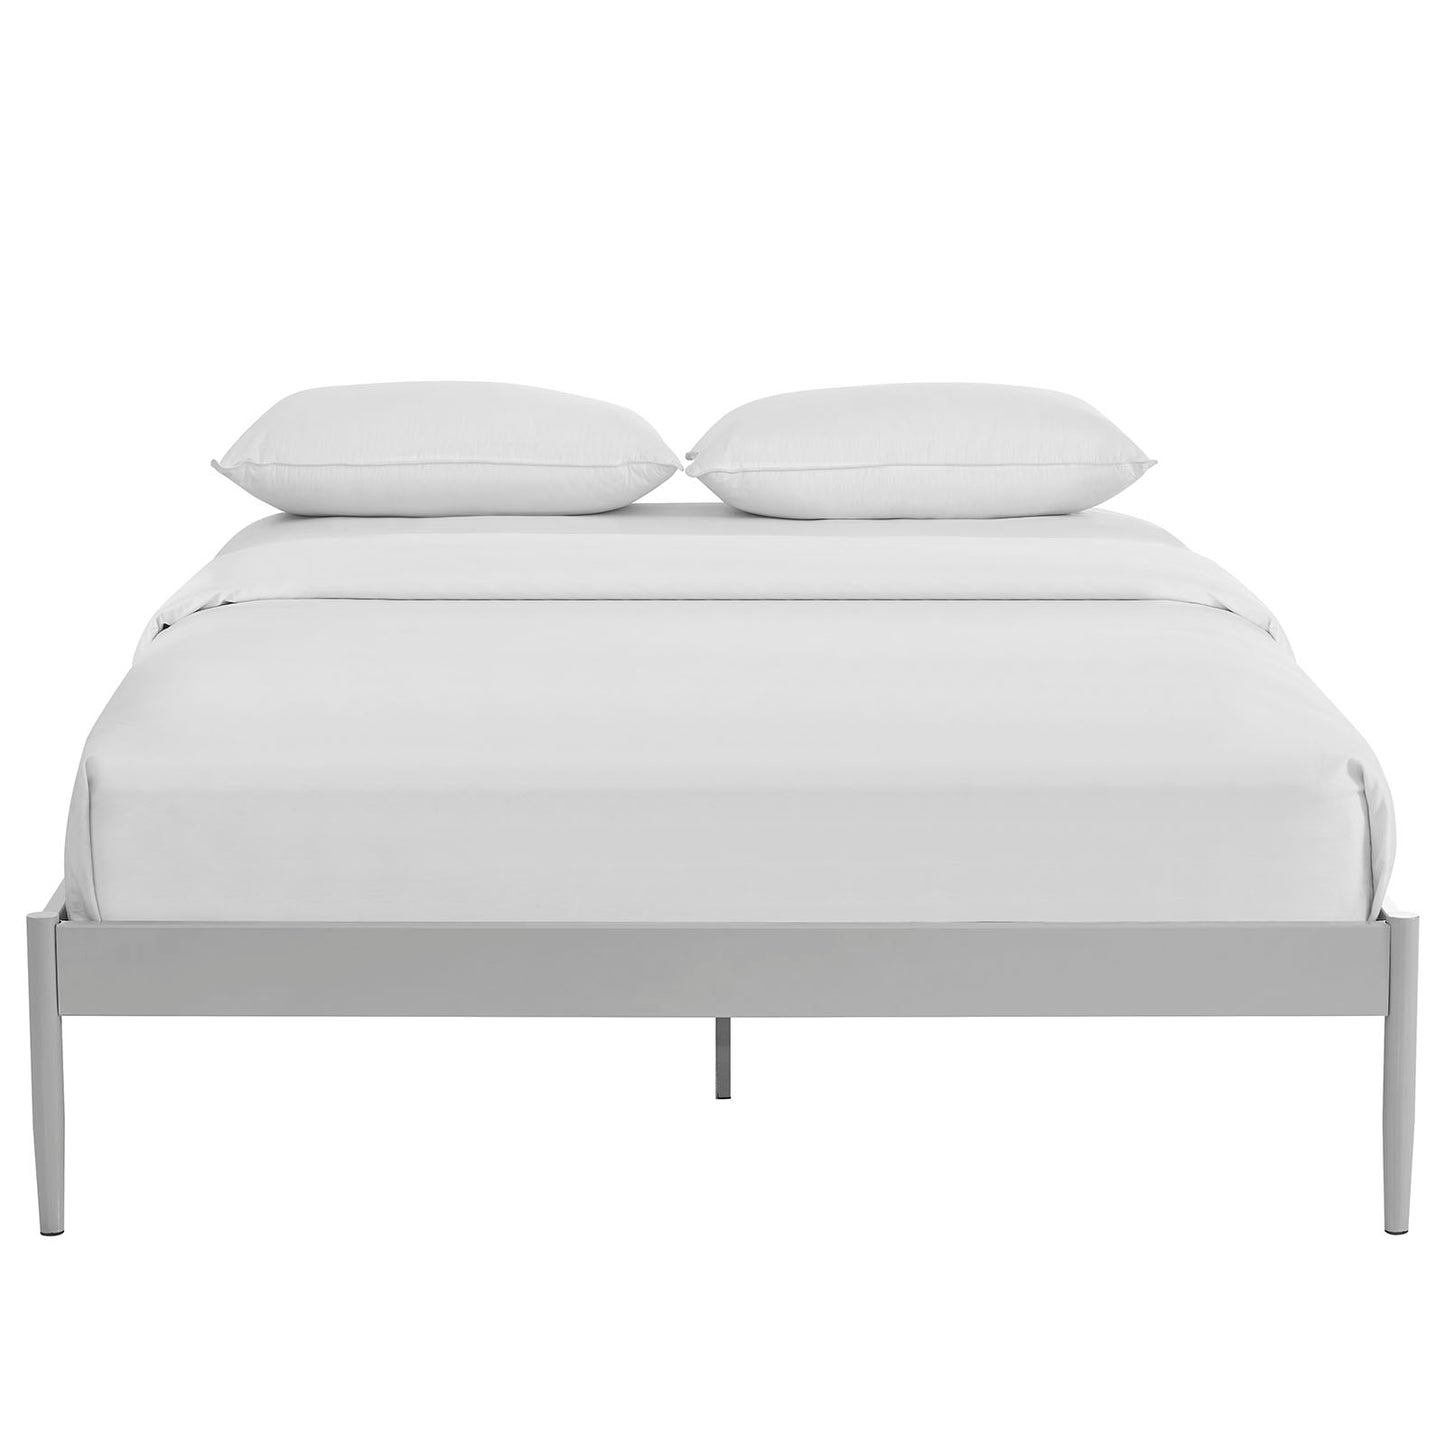 Modway Elsie Full Bed Frame - MOD-5473